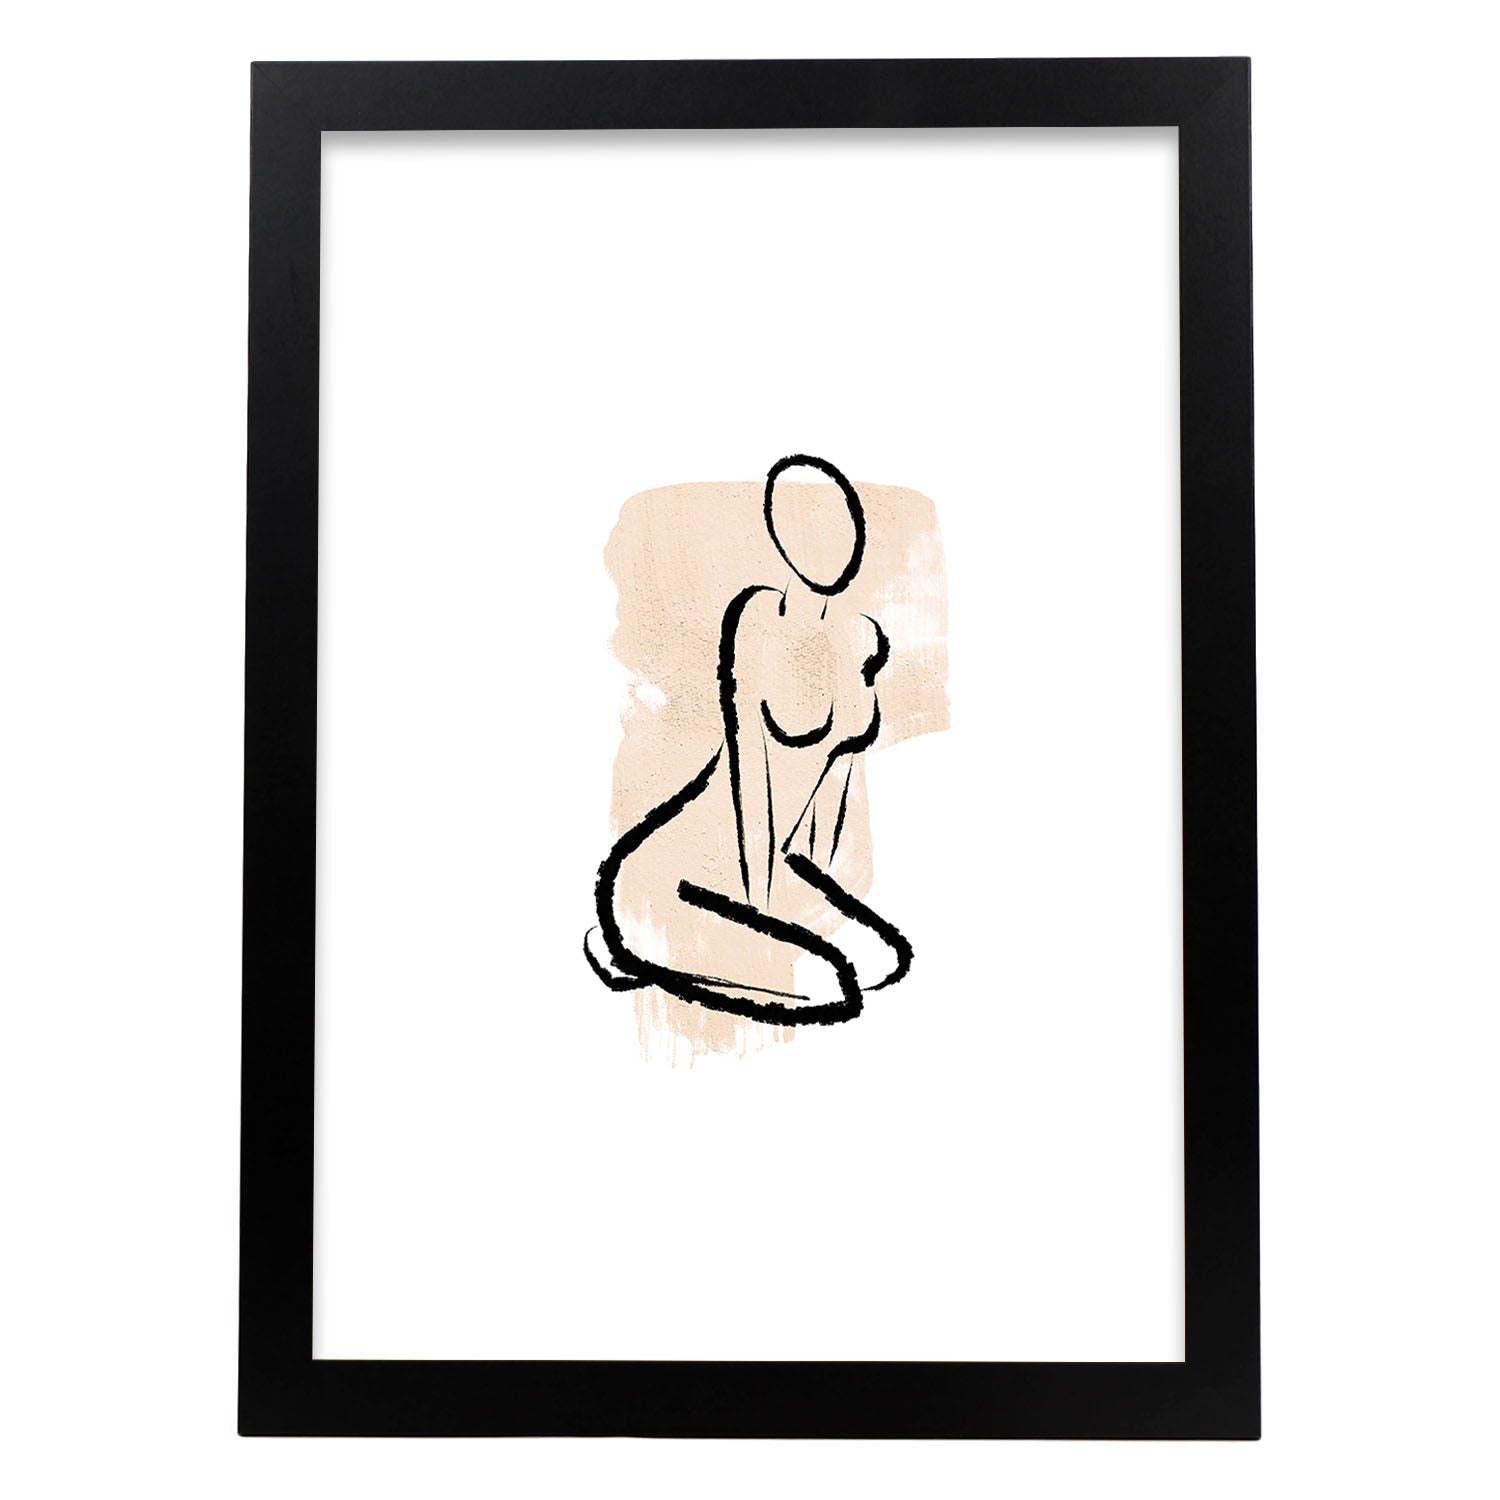 Poster con ilustracion de mujer. Dibujos con formas, caras, cuerpos y gestos de mujeres. 'Mujeres 16'.-Artwork-Nacnic-A4-Marco Negro-Nacnic Estudio SL